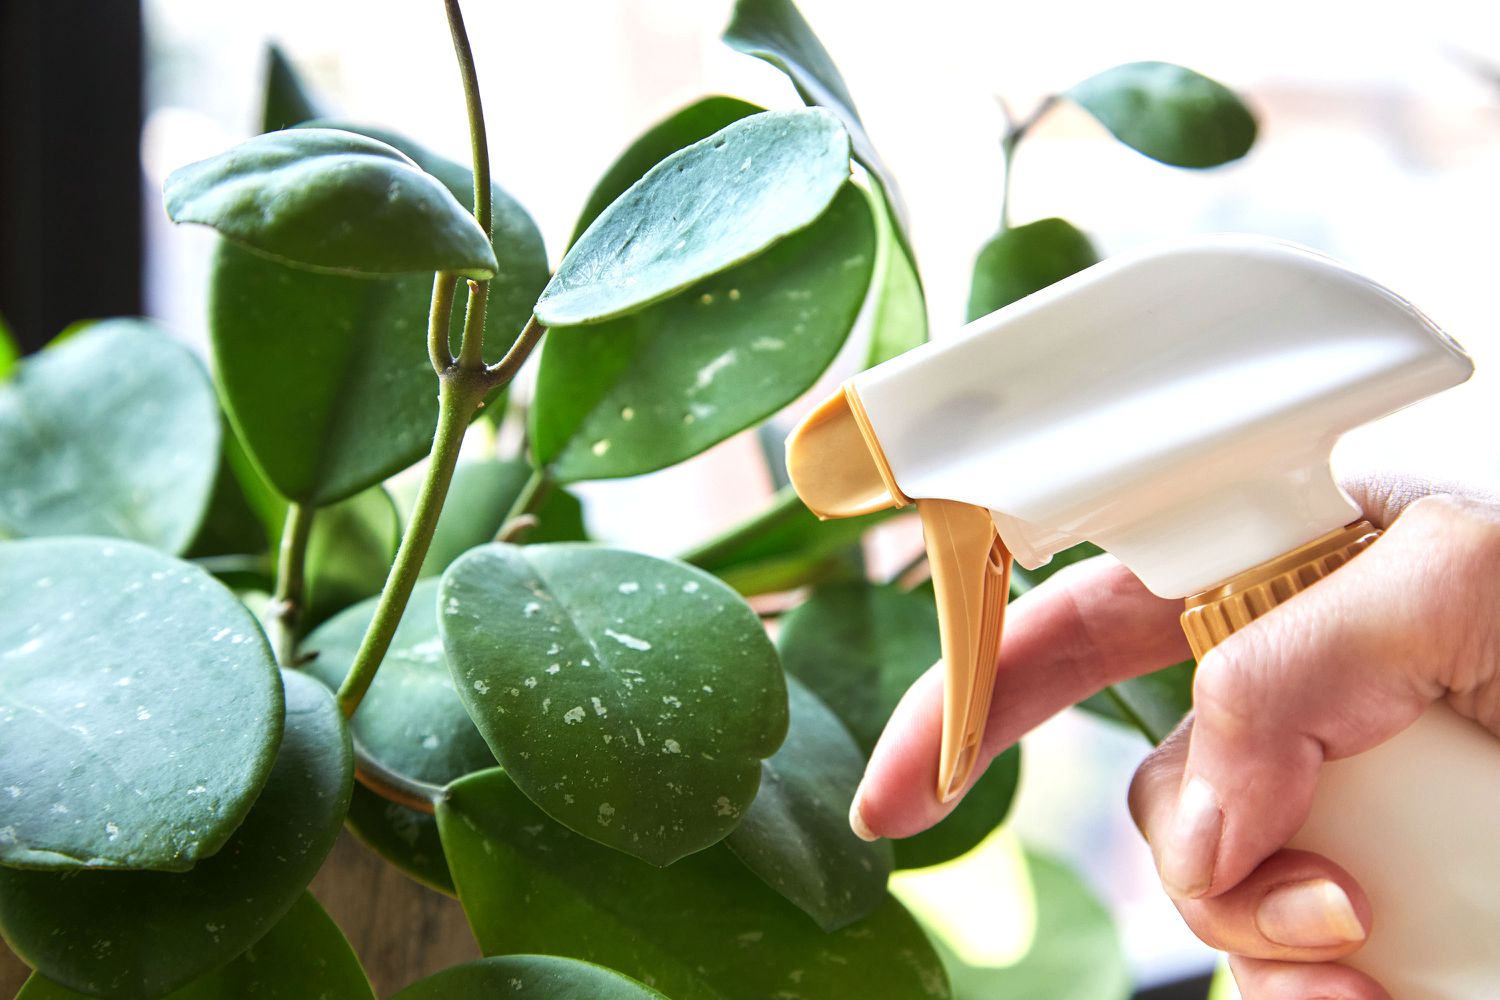 Neemölflasche wird auf Blätter von Zimmerpflanzen gesprüht